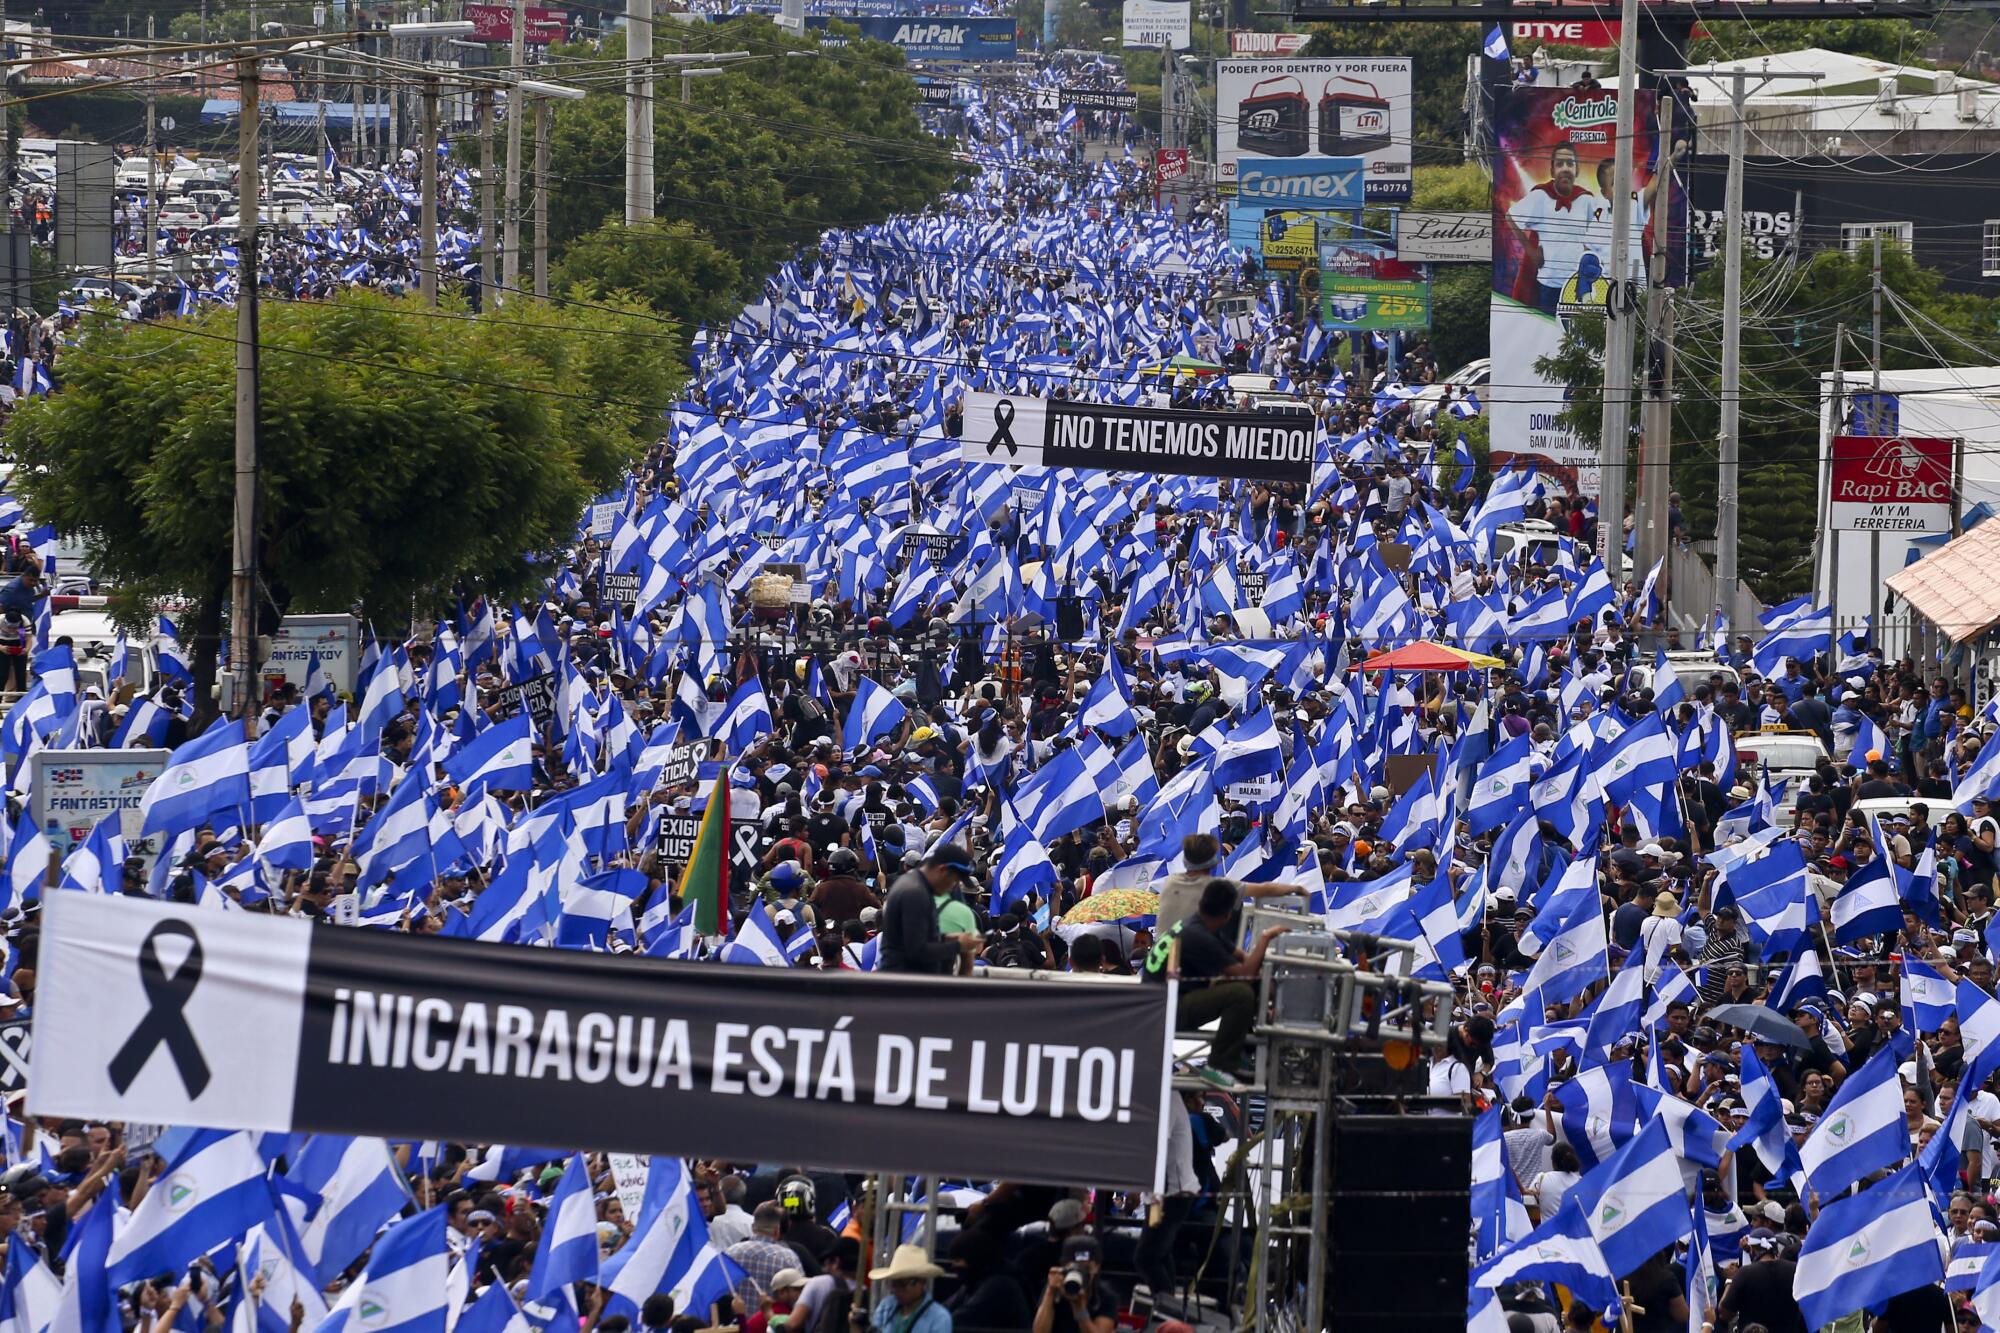 Decenas de miles de personas marchan en el Día de la Madre de Nicaragua contra el Presidente Daniel Ortega en Managua, Nicaragua, el 30 de mayo de 2018. Al menos 17 personas fueron asesinadas durante esta manifestación y otras en todo el país ese mismo día.